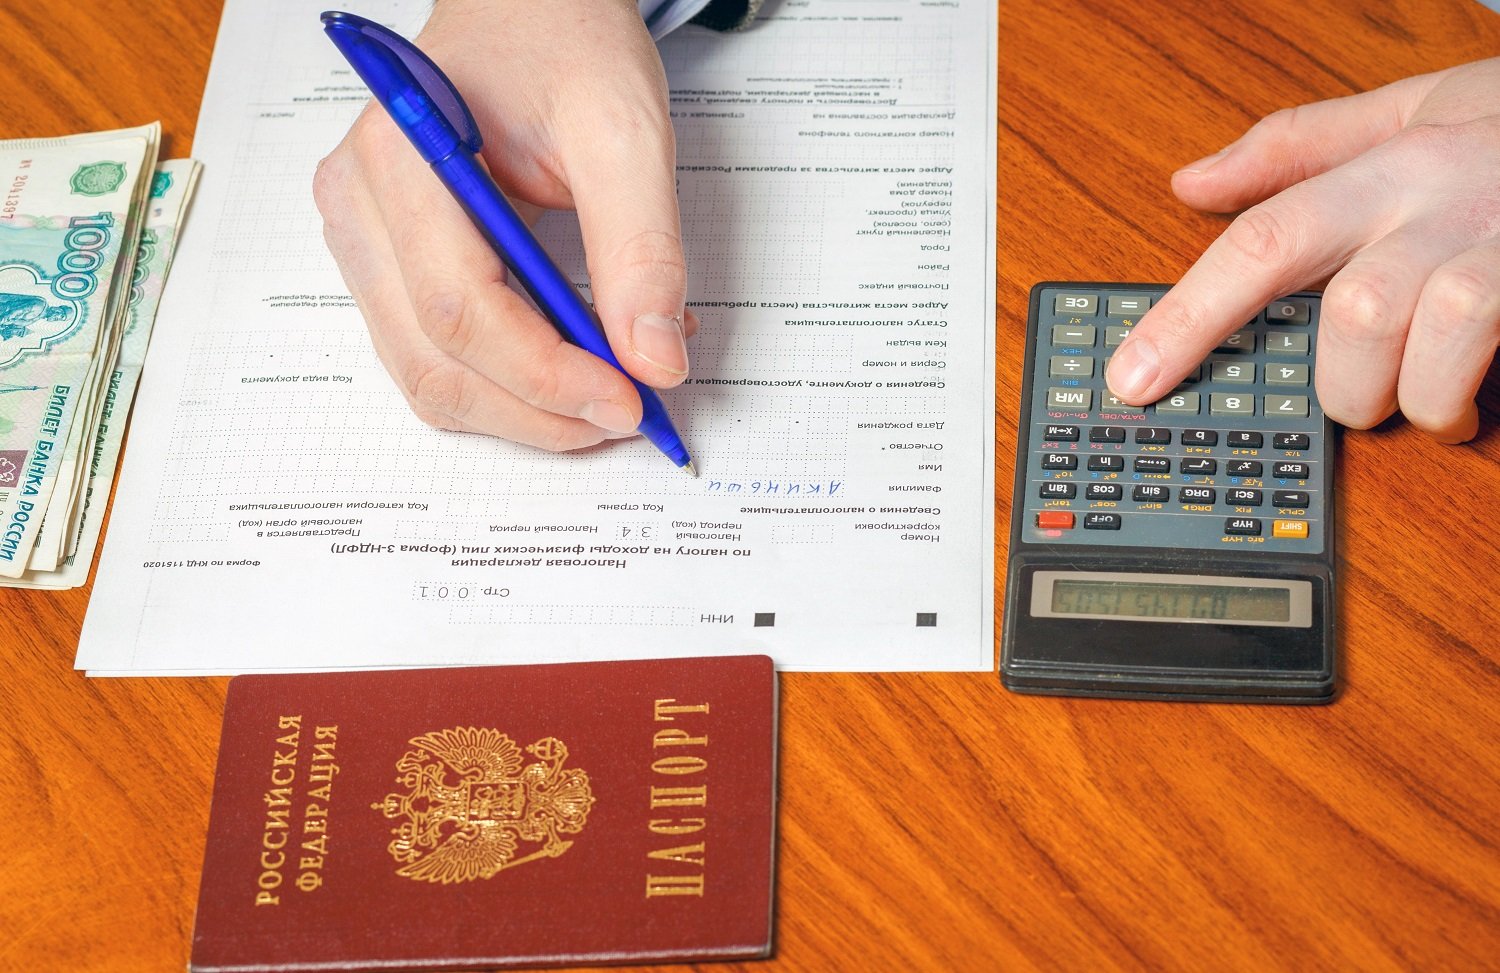 一个人拿着笔填写俄罗斯纳税申报表。 表格旁边是一小堆俄罗斯钞票和一个计算器。 该人按下计算器上的一个键。